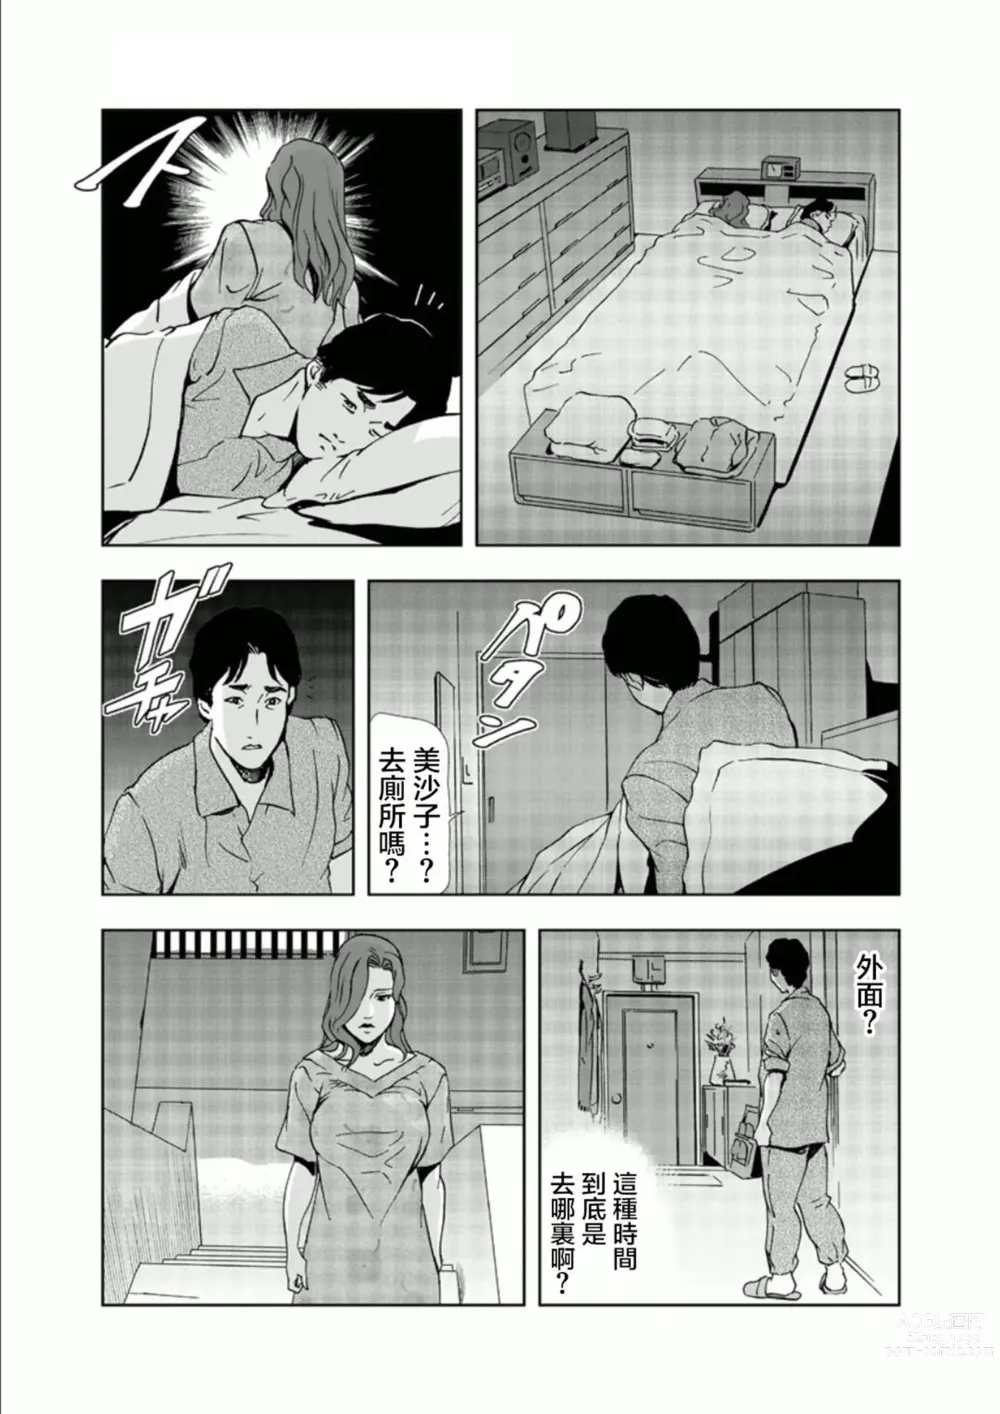 Page 22 of manga Netorare 1